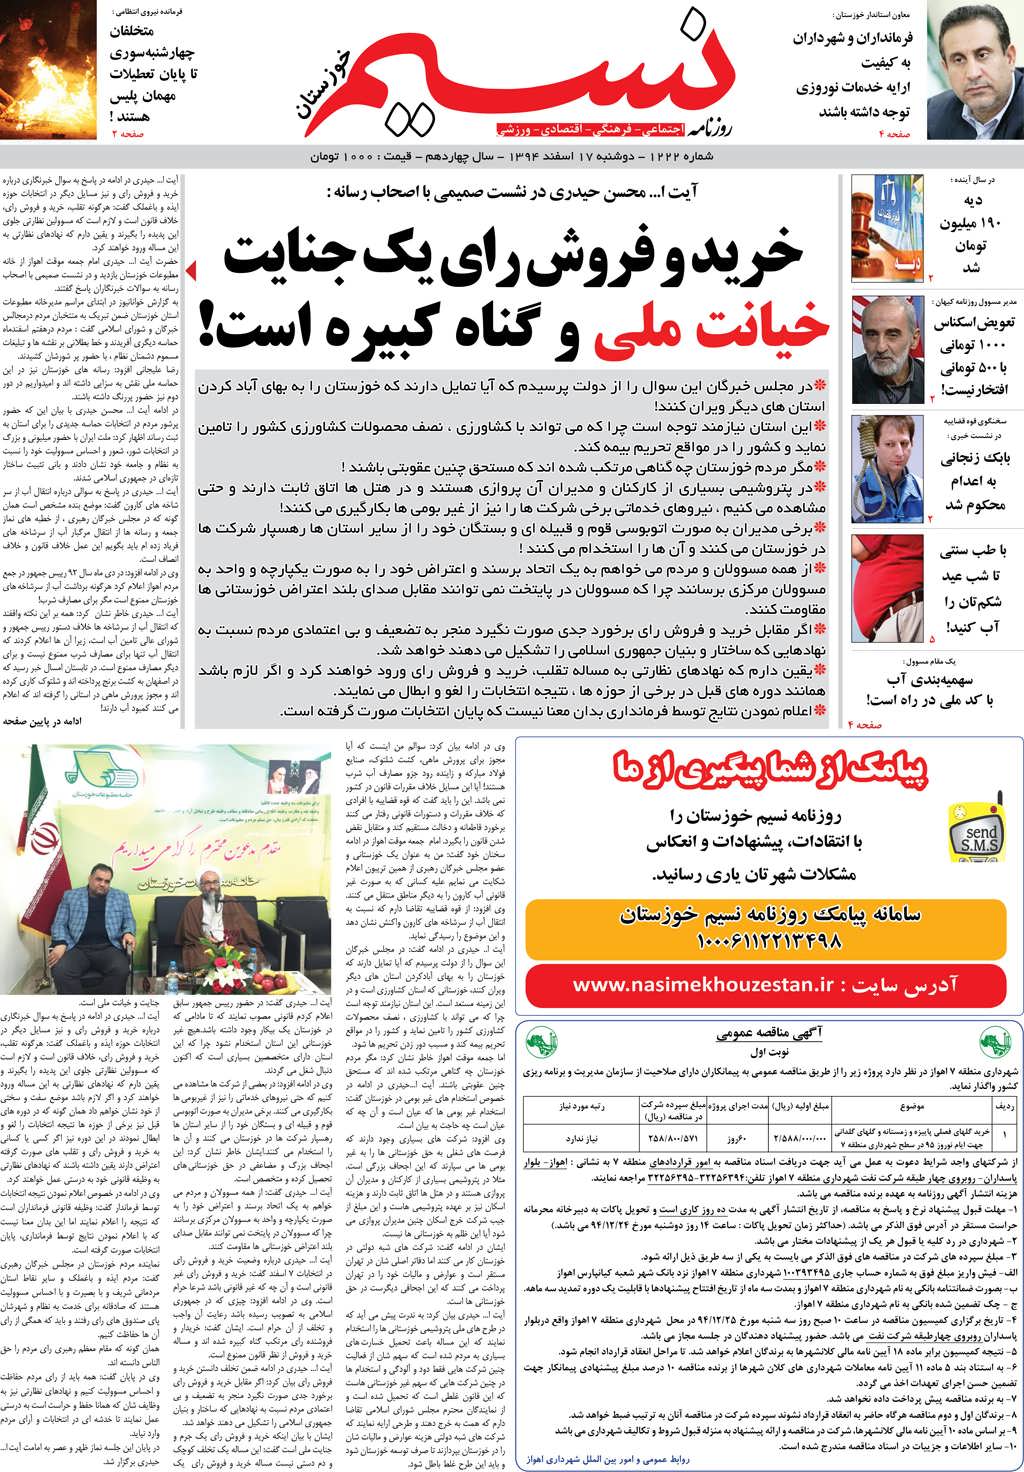 صفحه اصلی روزنامه نسیم شماره 1222